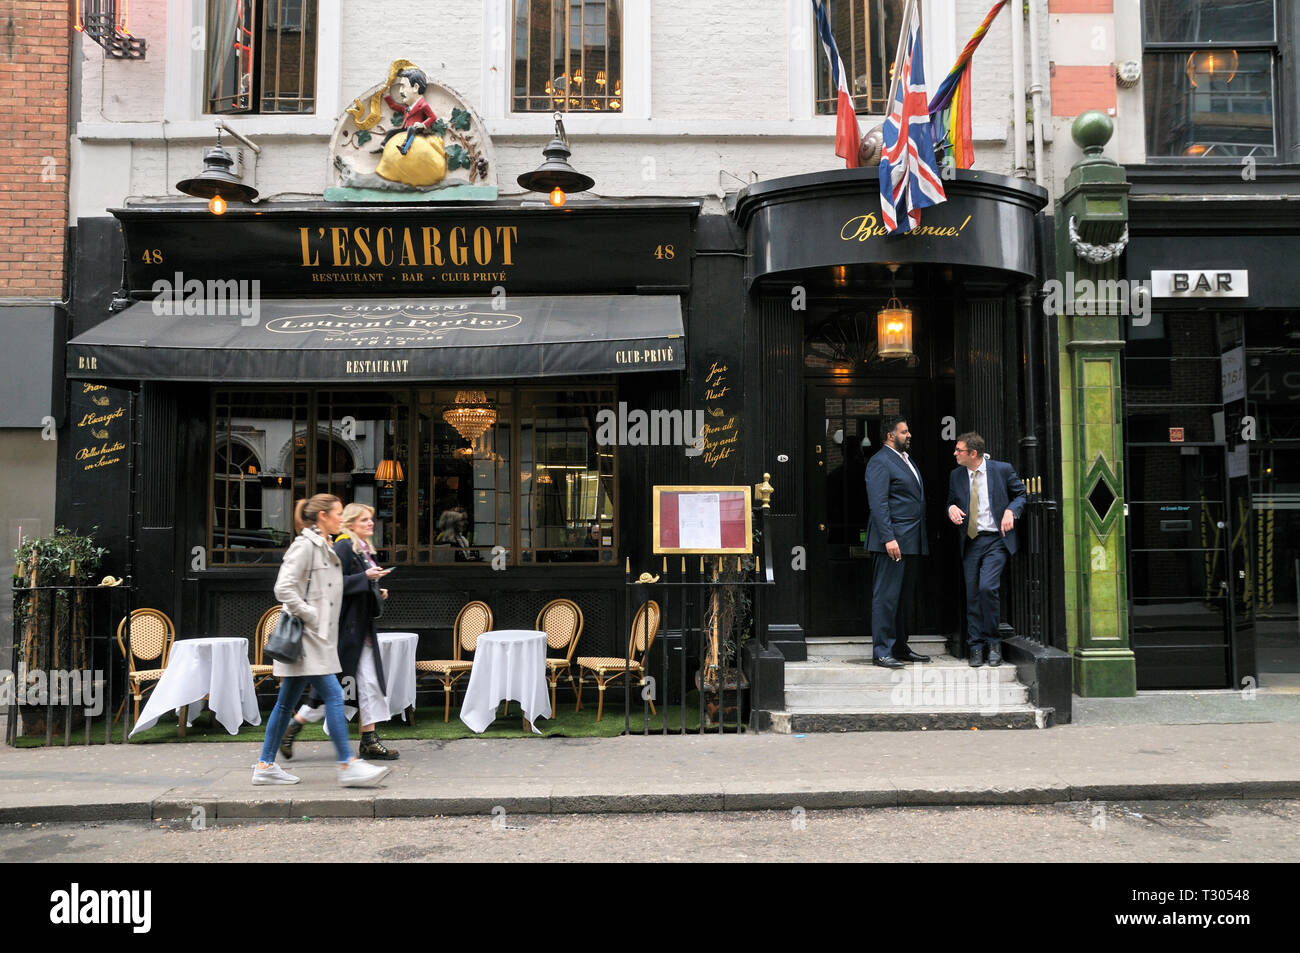 L'Escargot à Soho - quartiers les plus anciens et les plus célèbres du club et restaurant français, grec 48 Street, Soho, London, England, UK Banque D'Images